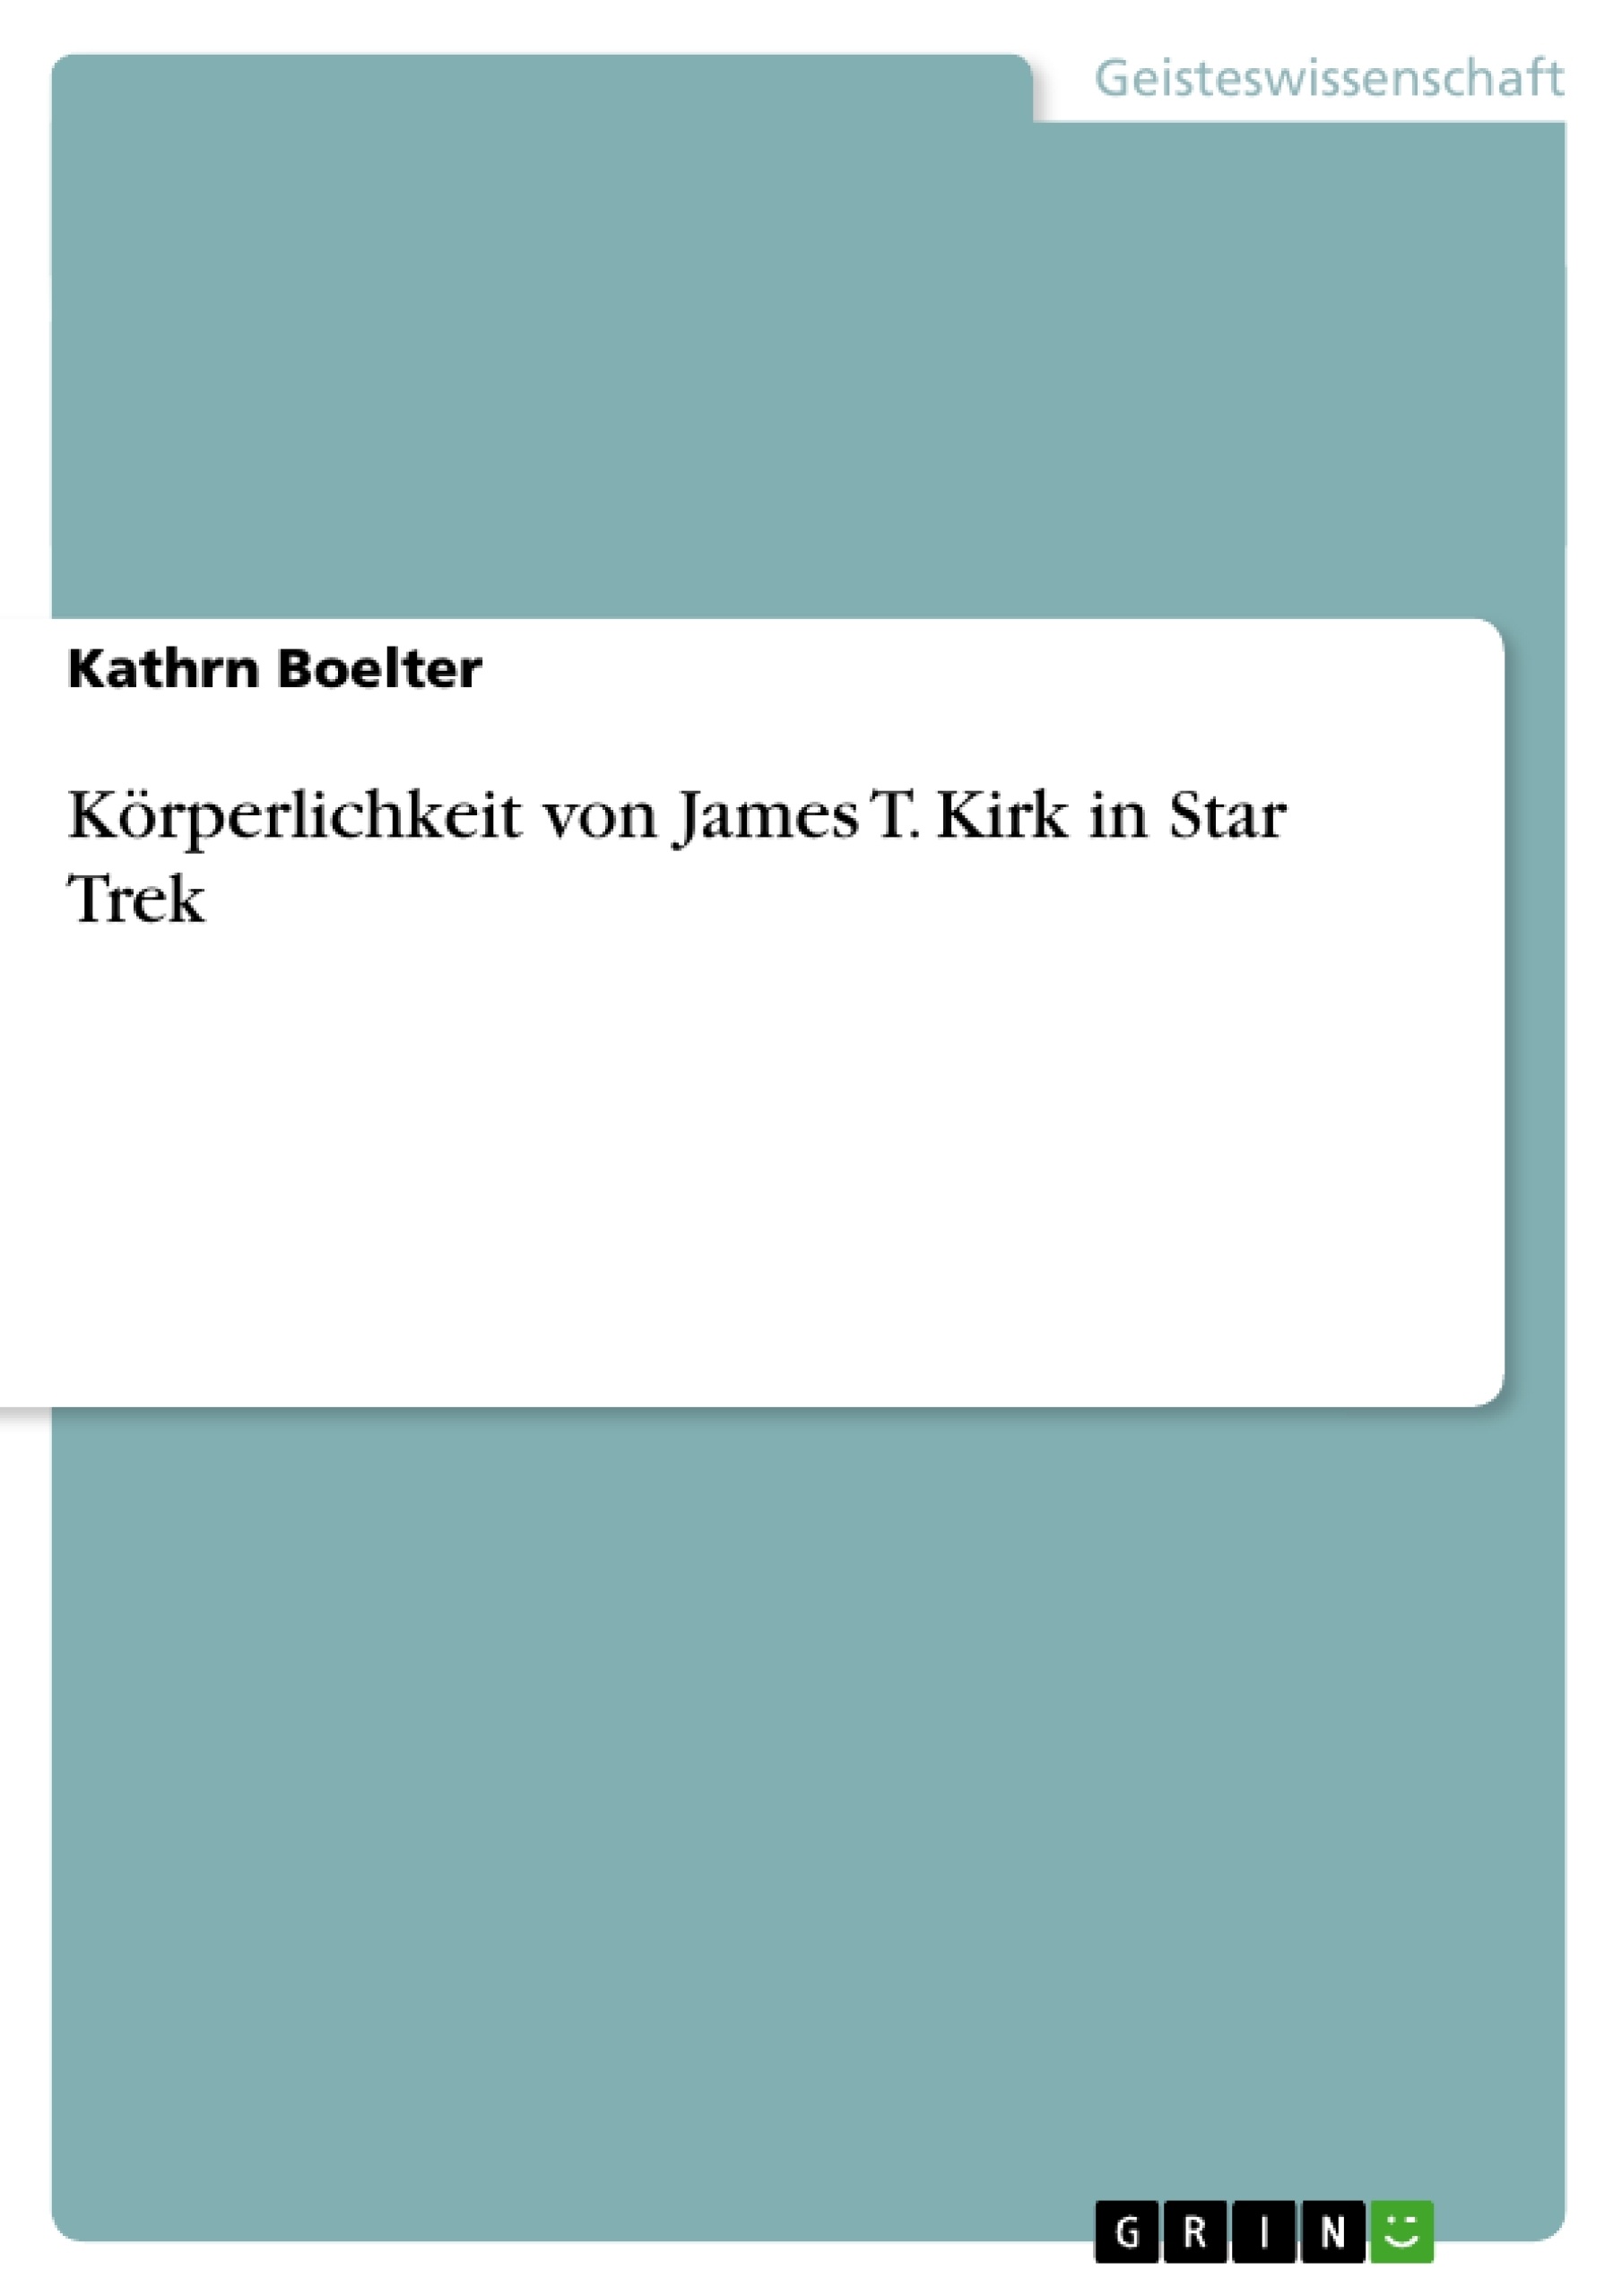 Titre: Körperlichkeit von James T. Kirk in Star Trek